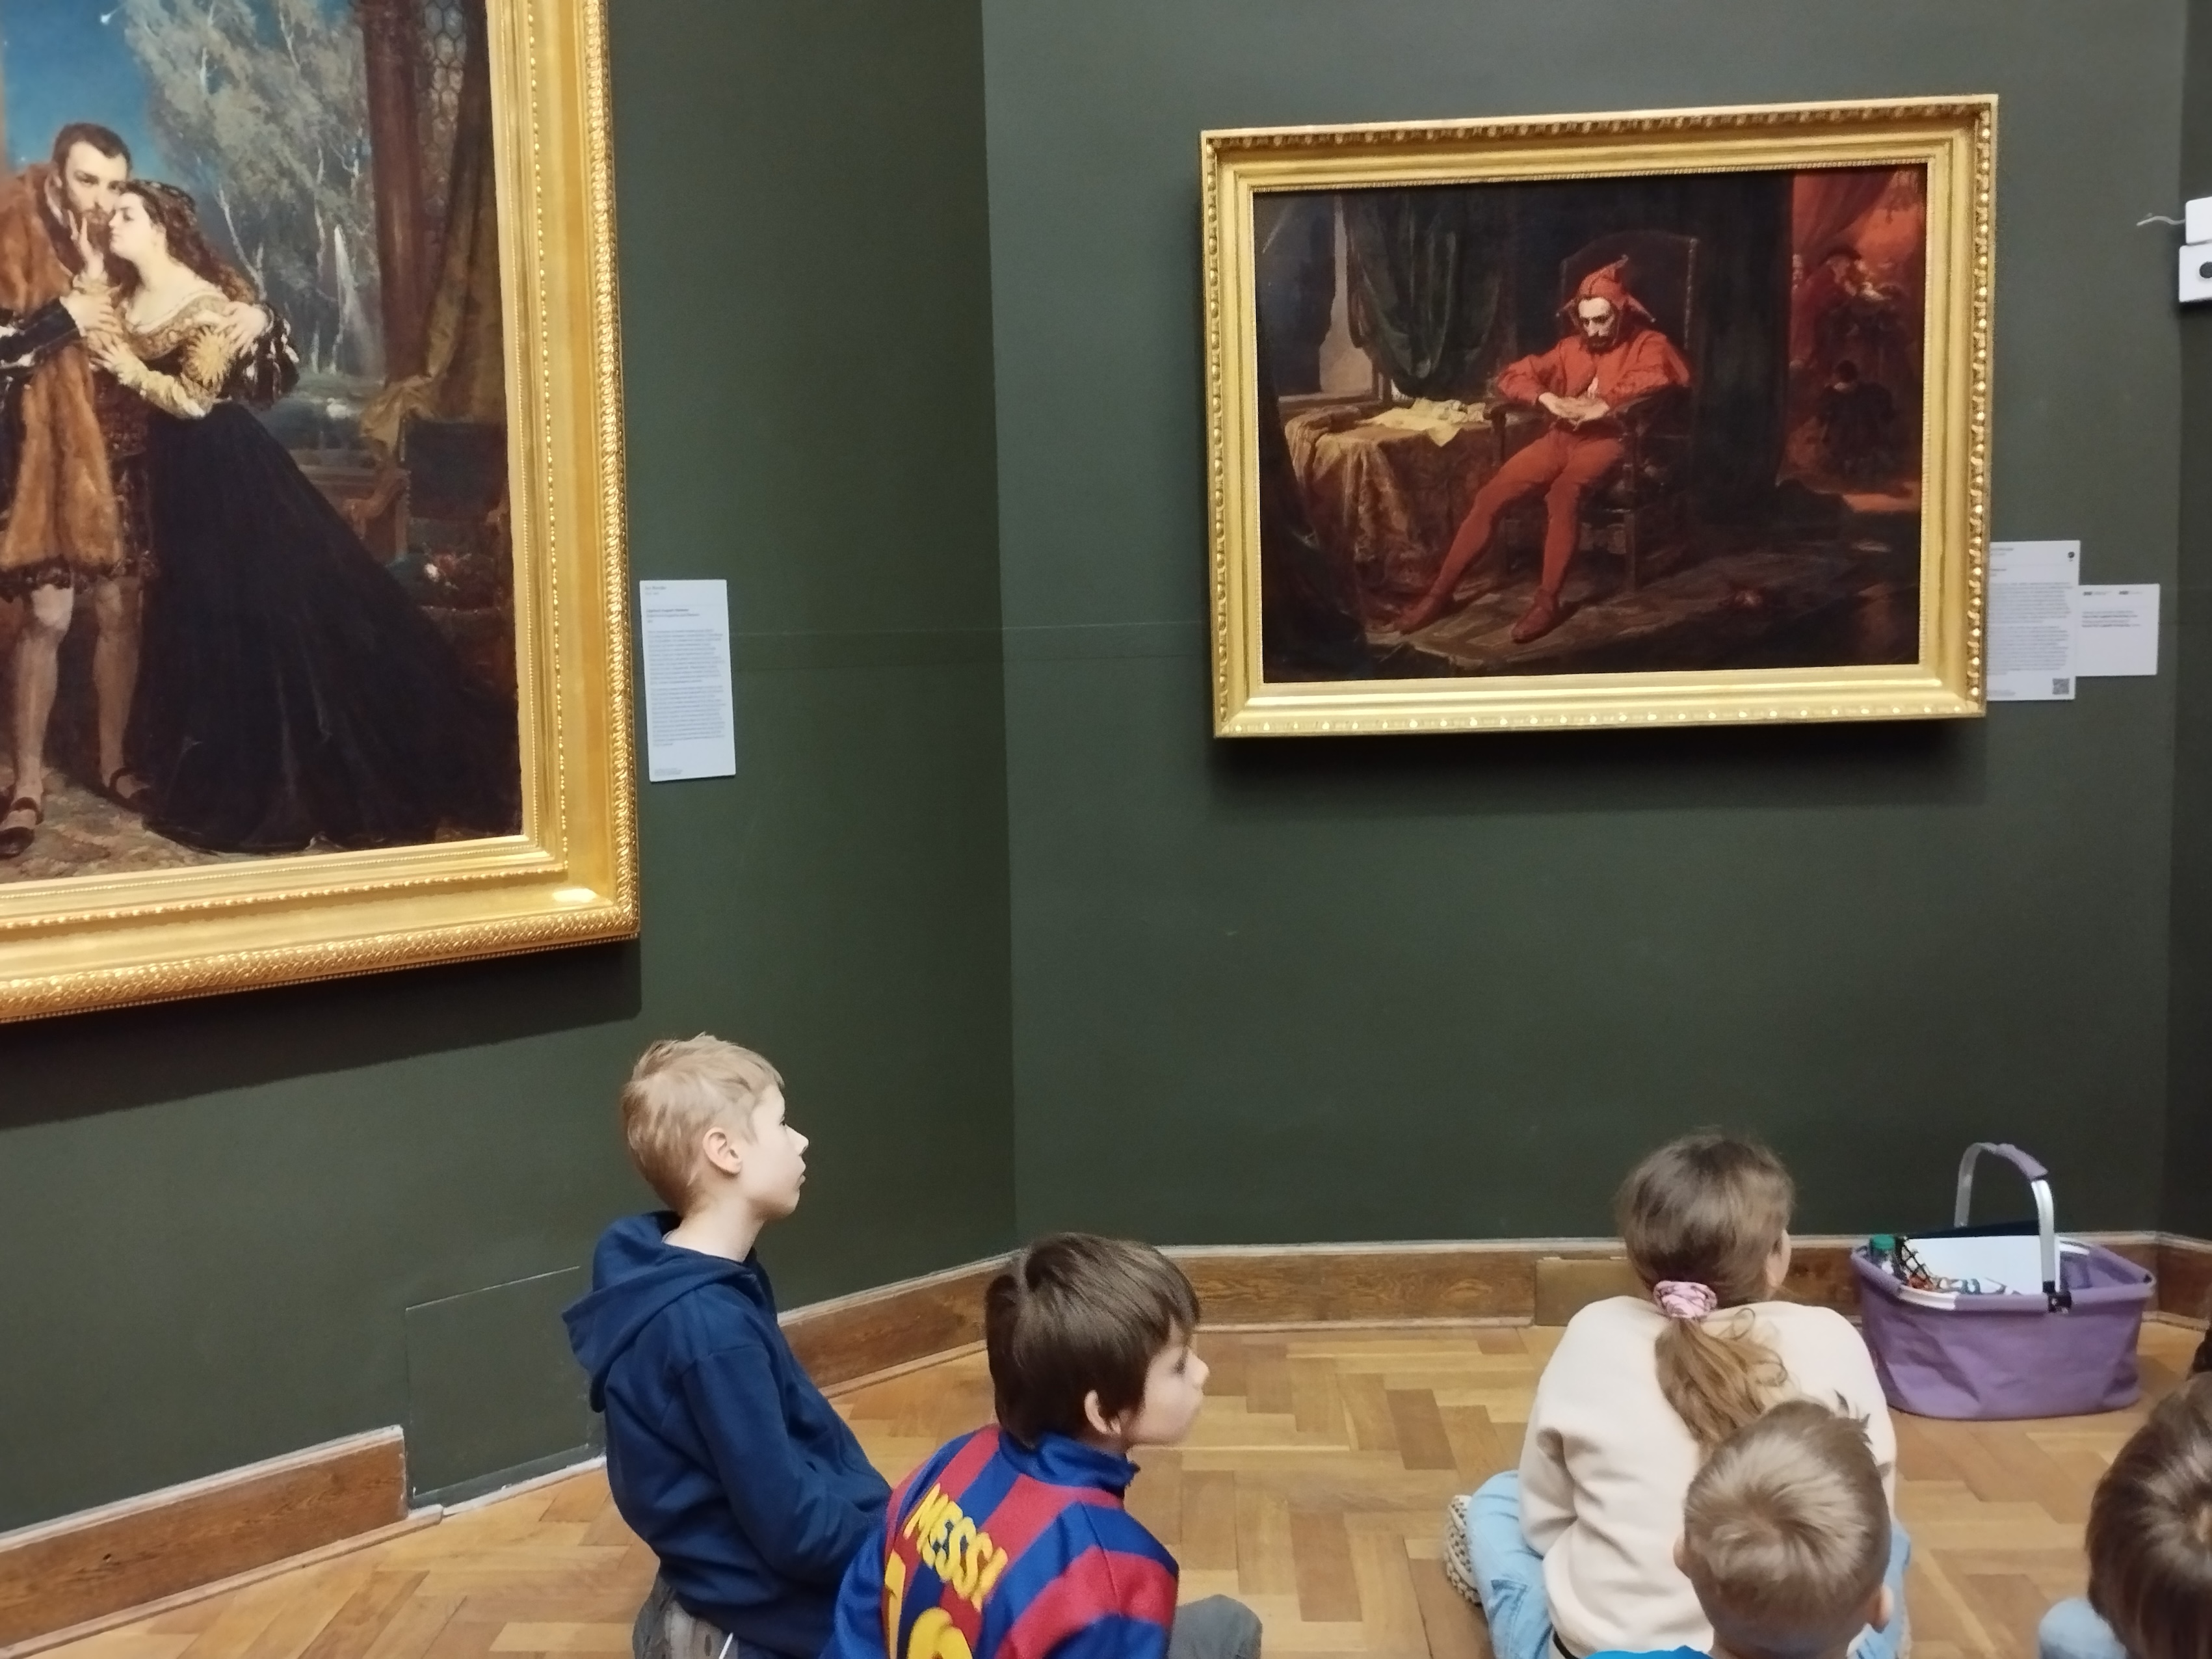 Ucznioowie w sali muzealnej siedzą na podłodze. Widzimy ich sylwetki z profilu lub wzrócone tyłem. Przed nimi na ścianach wisza obrazy w złotych ramach.